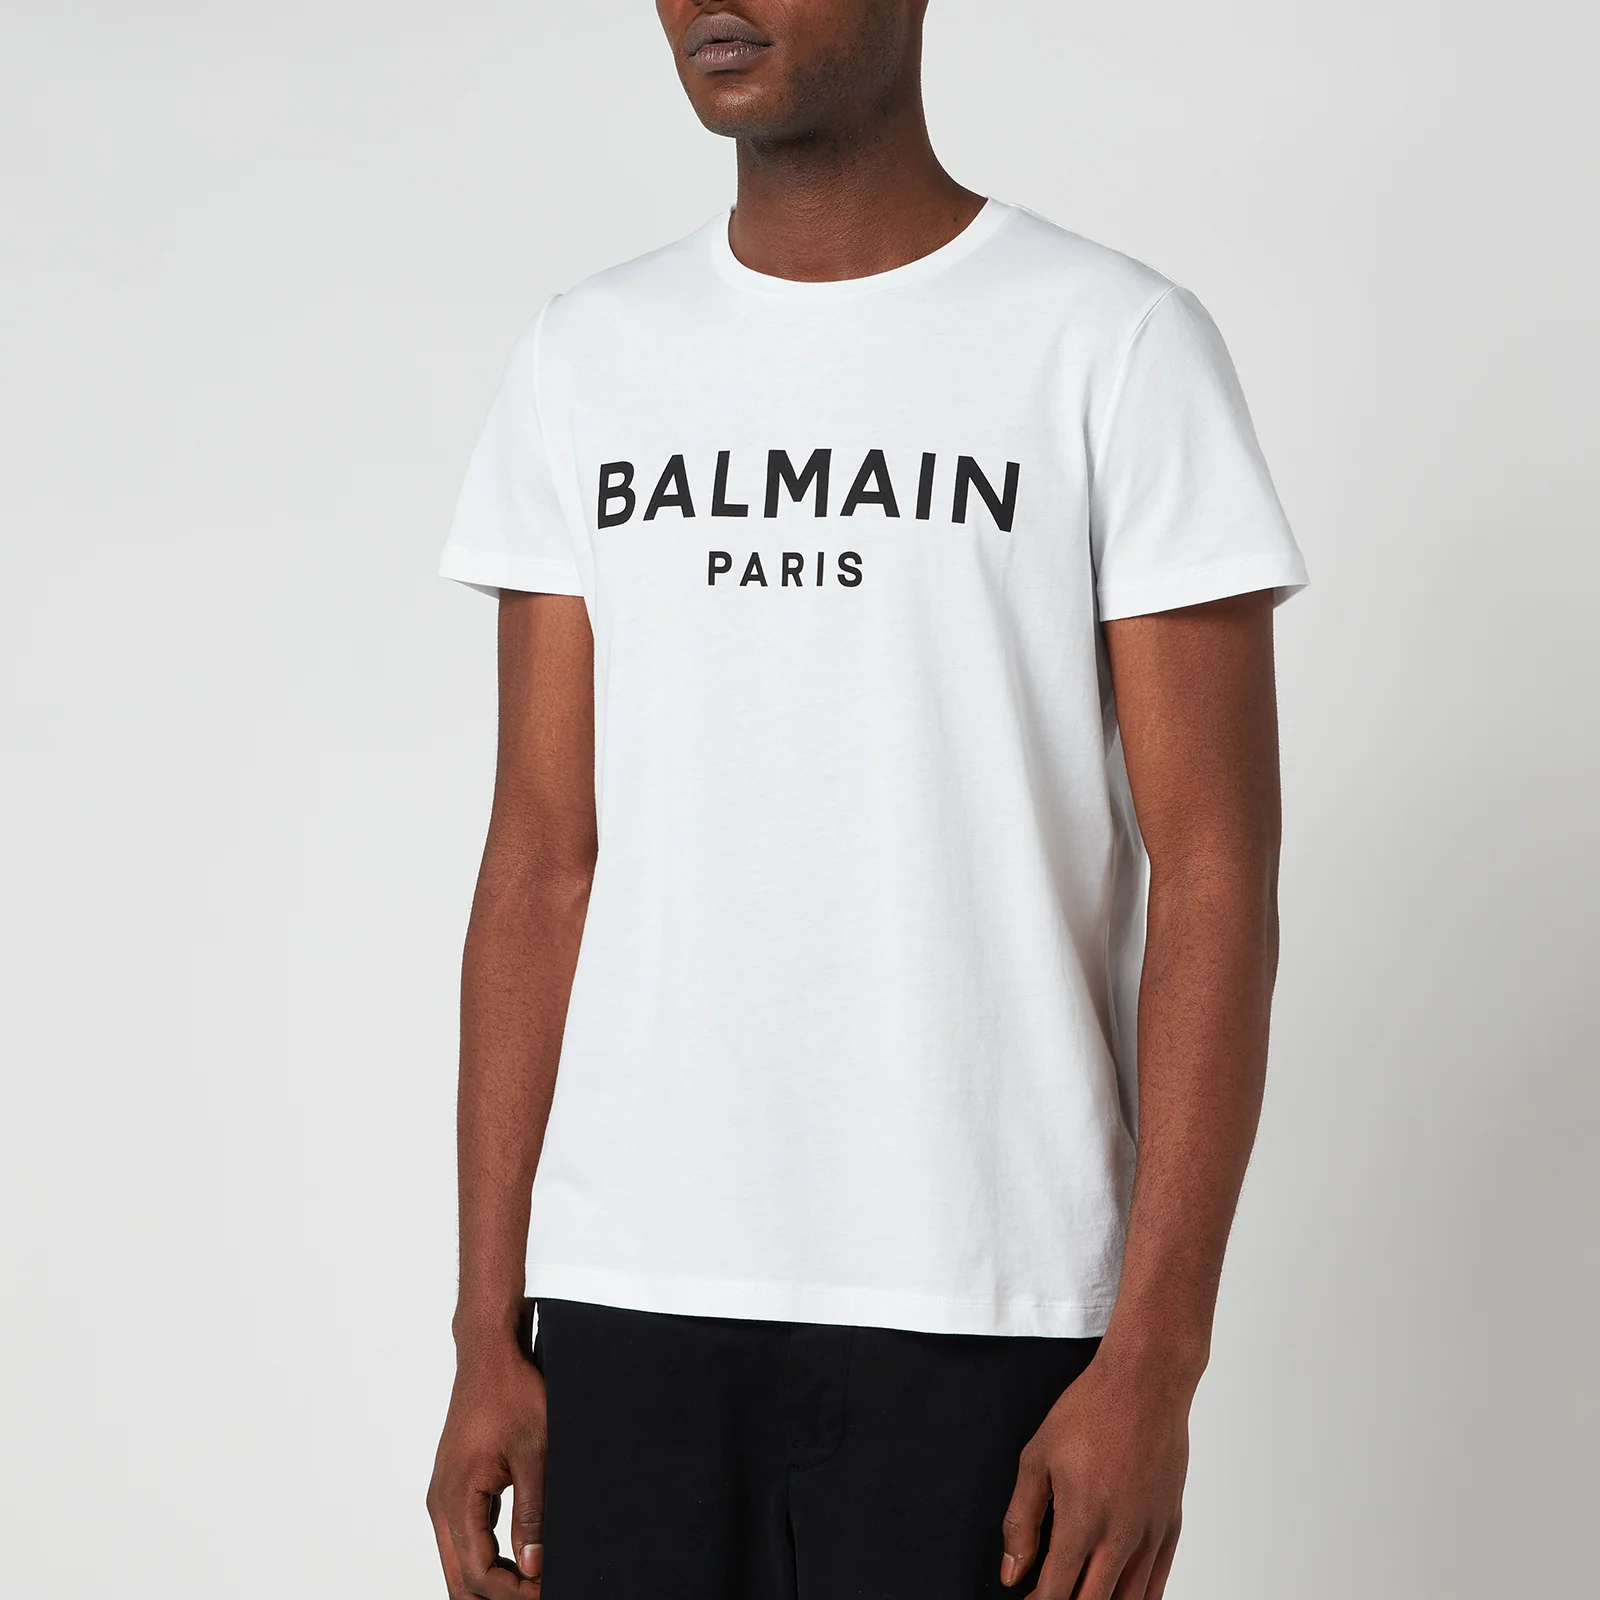 Balmain Men's Printed Logo T-Shirt - White/Black Image 1